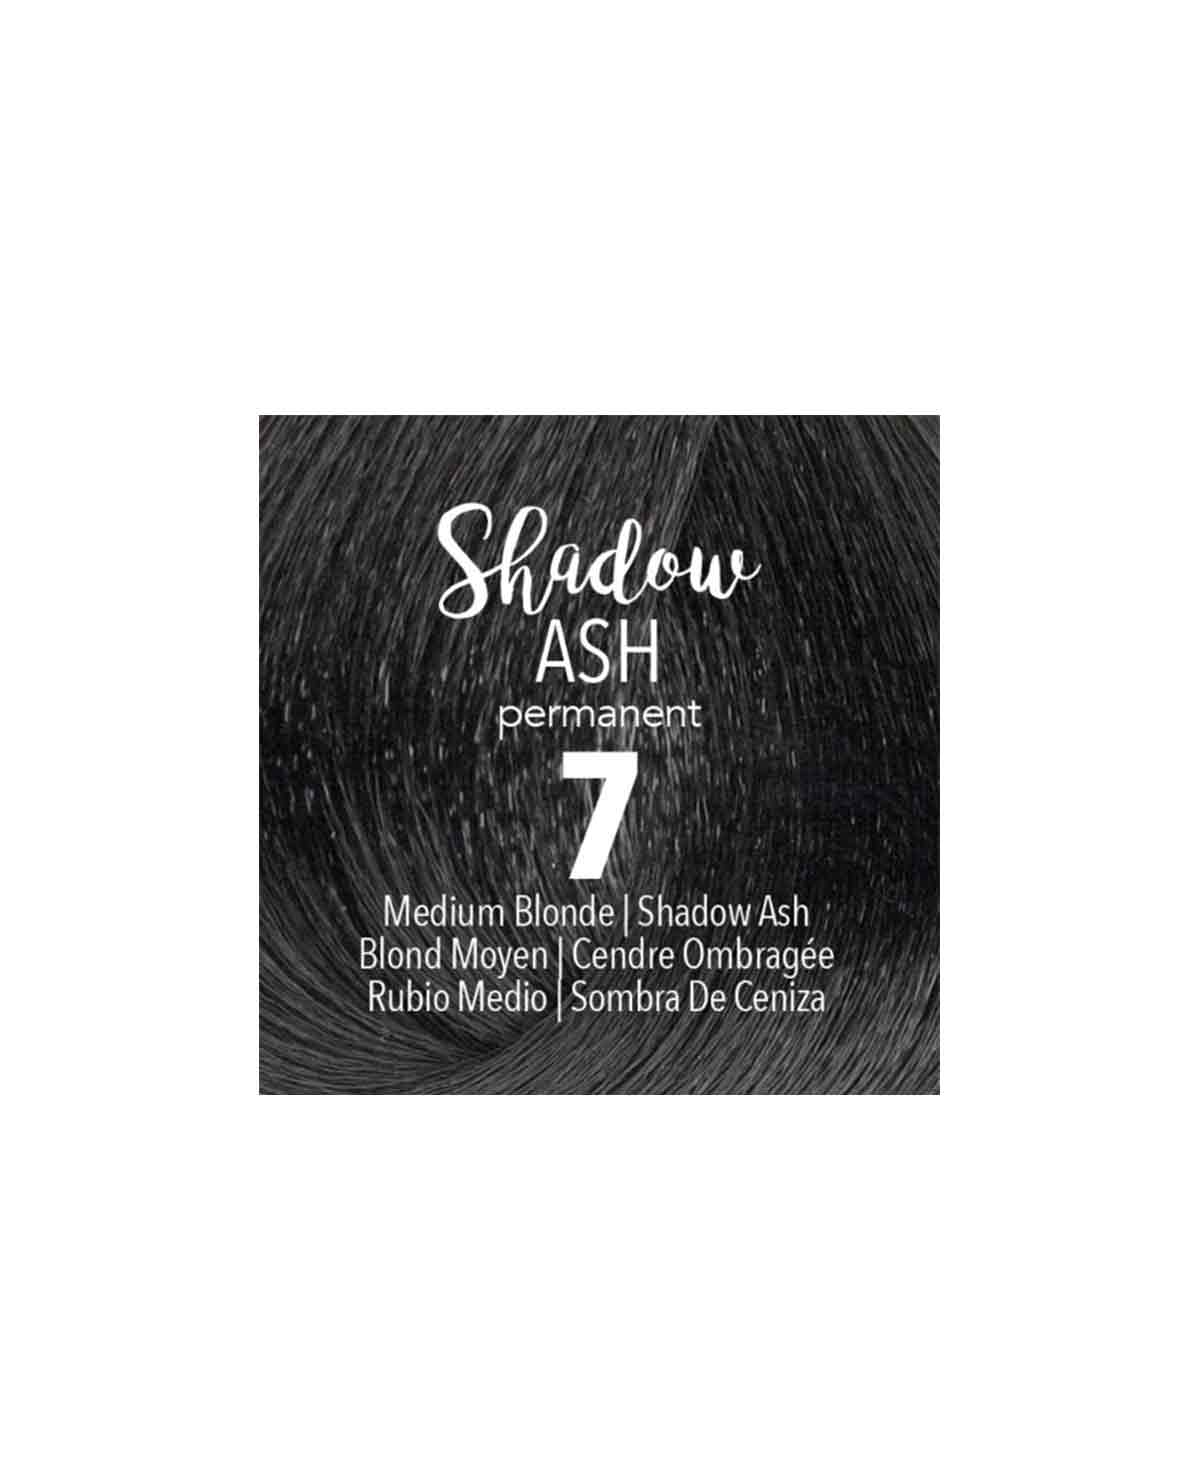 Mydentity - PERM. 7 Shadow Ash Medium Blonde